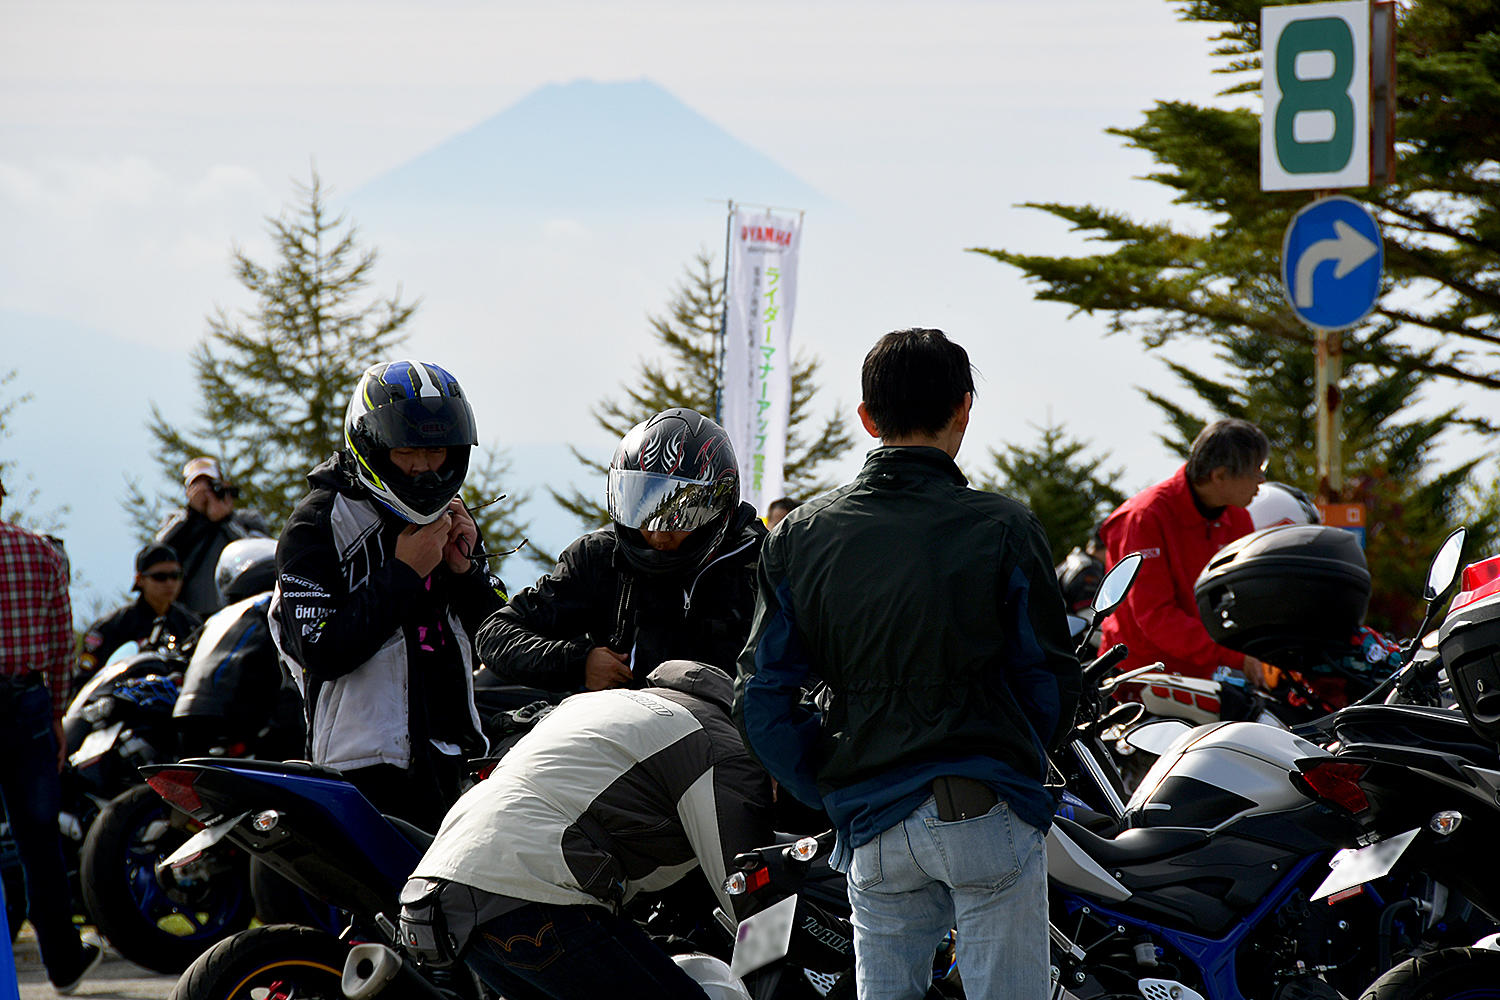 朝から、富士山が顔をのぞかせていました。幸先イイ感じです